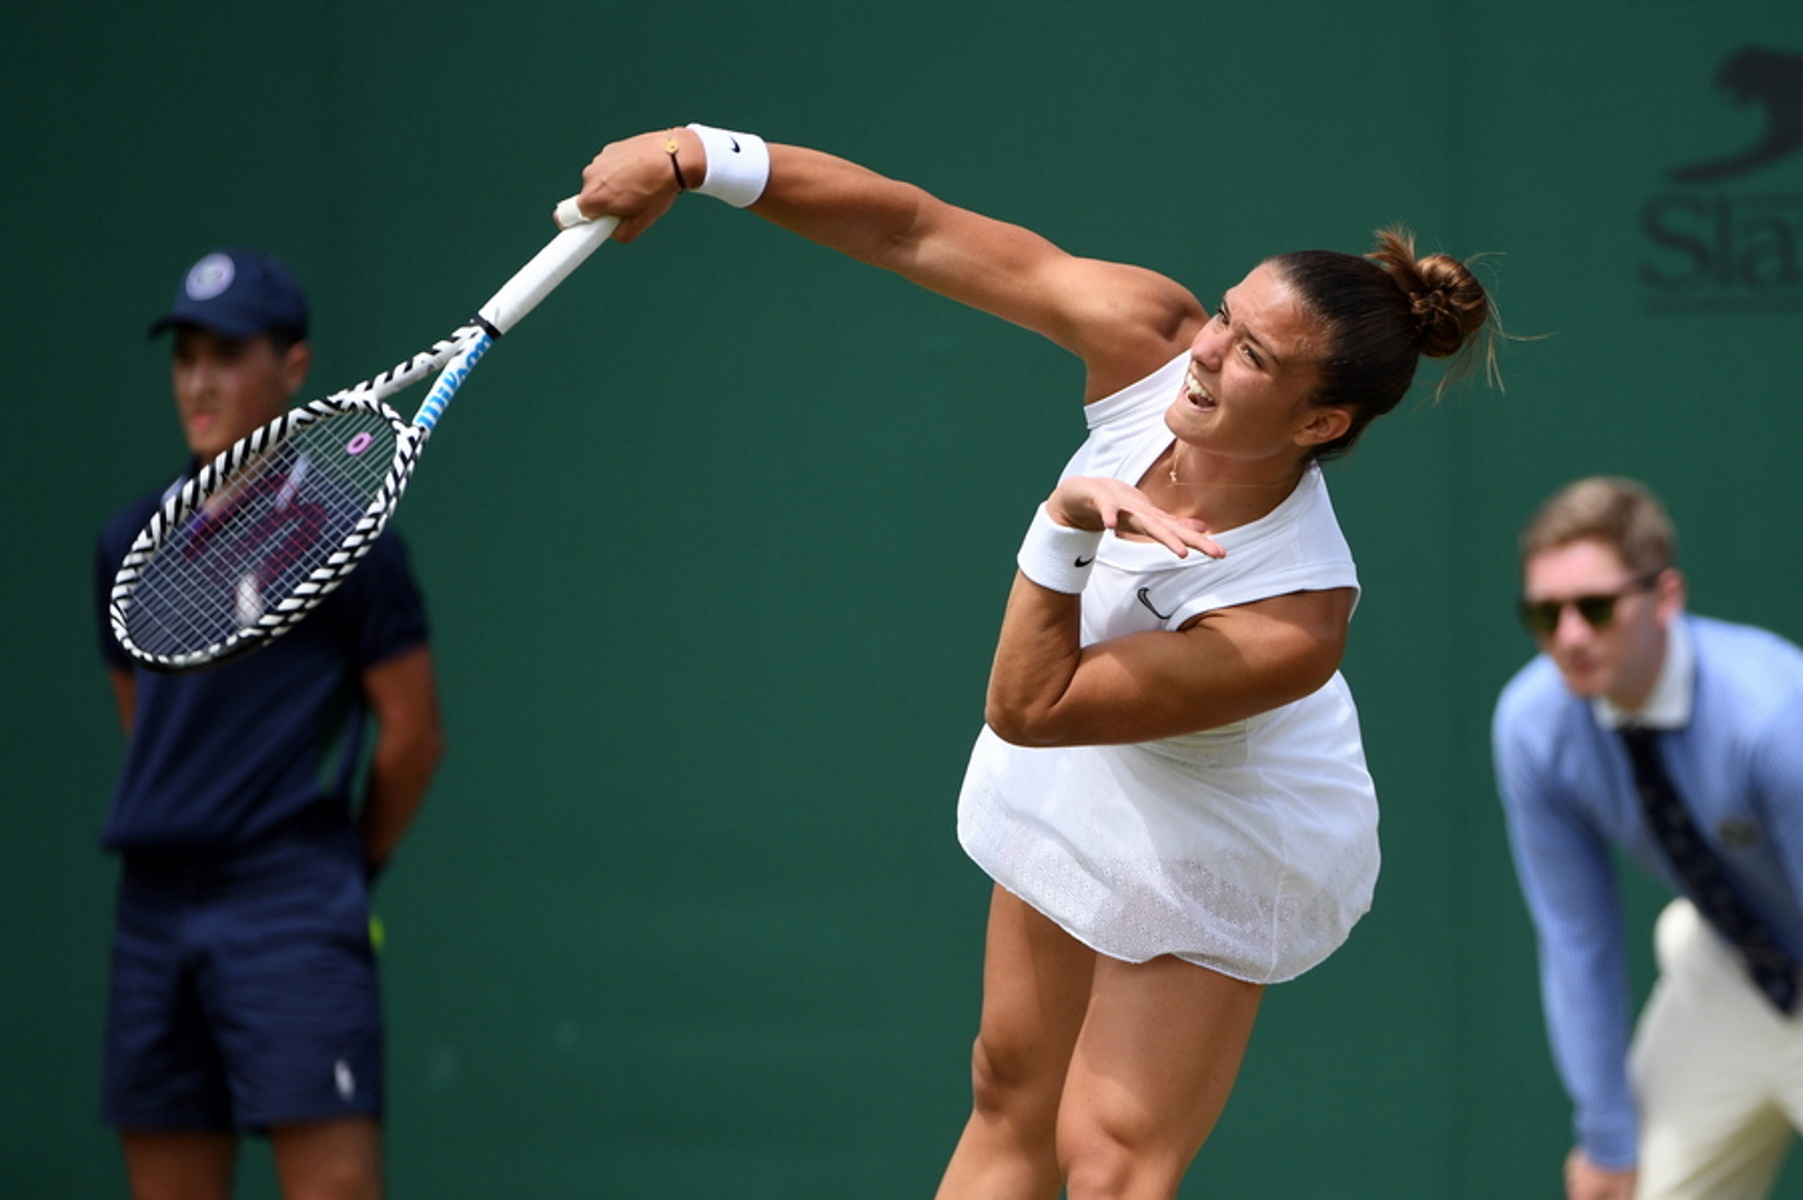 Μαρία Σάκκαρη – Σέλμπι Ρότζερς: Η ώρα που θα συνεχιστεί ο αγώνας στο Wimbledon